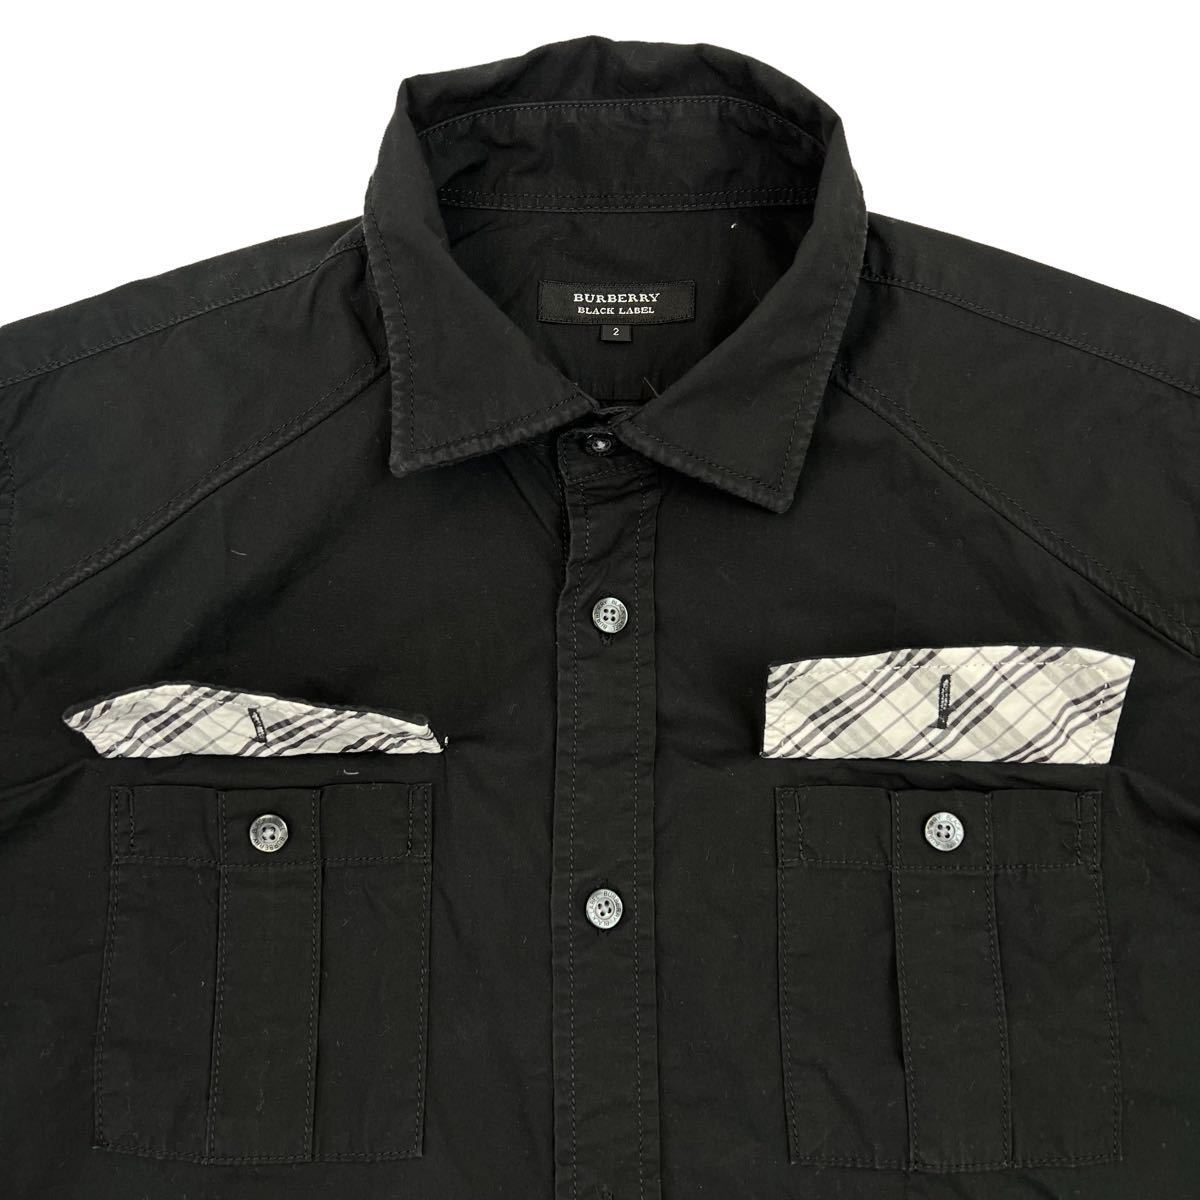  превосходный товар BURBERRY BLACK LABEL Burberry Black Label рубашка с коротким рукавом размер 2/M чёрный подкладка noba в клетку переключатель шланг вышивка редкий весна лето 230314